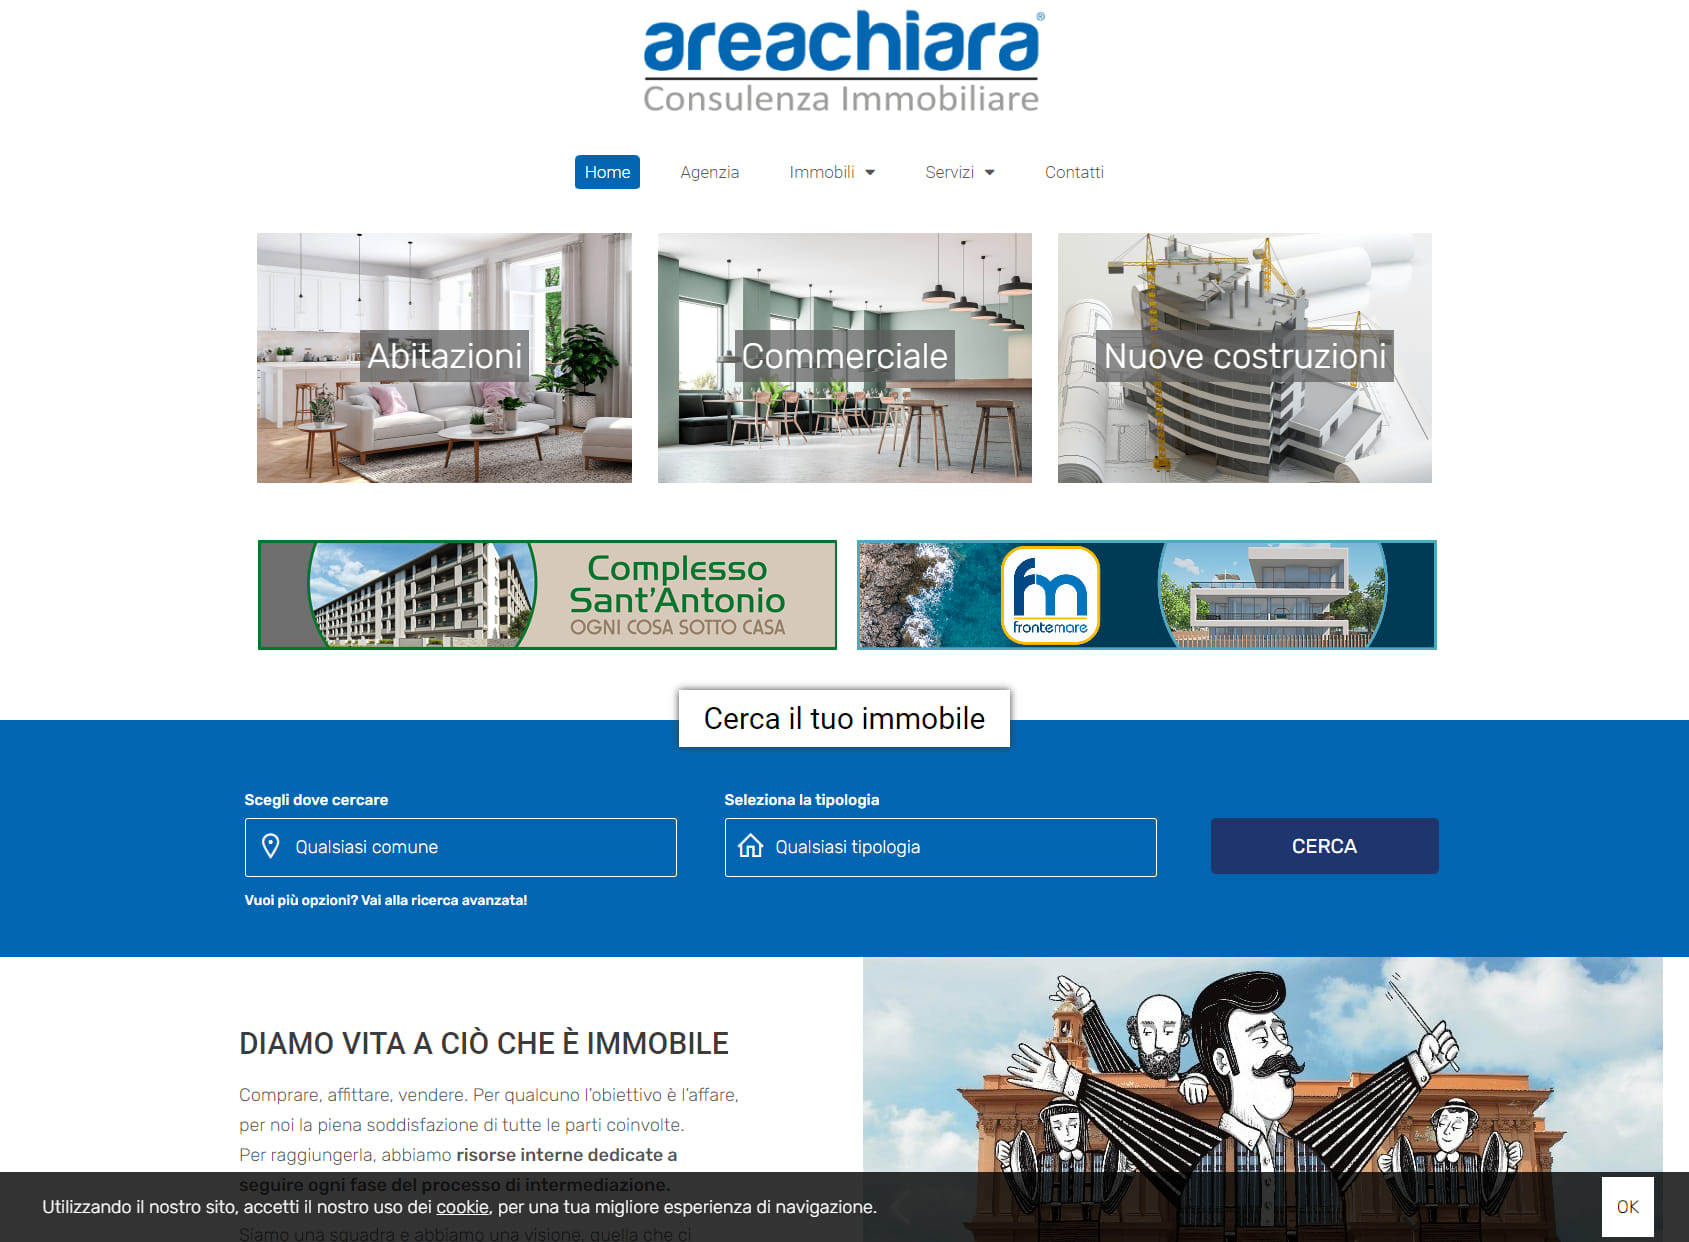 Areachiara - Consulenza immobiliare